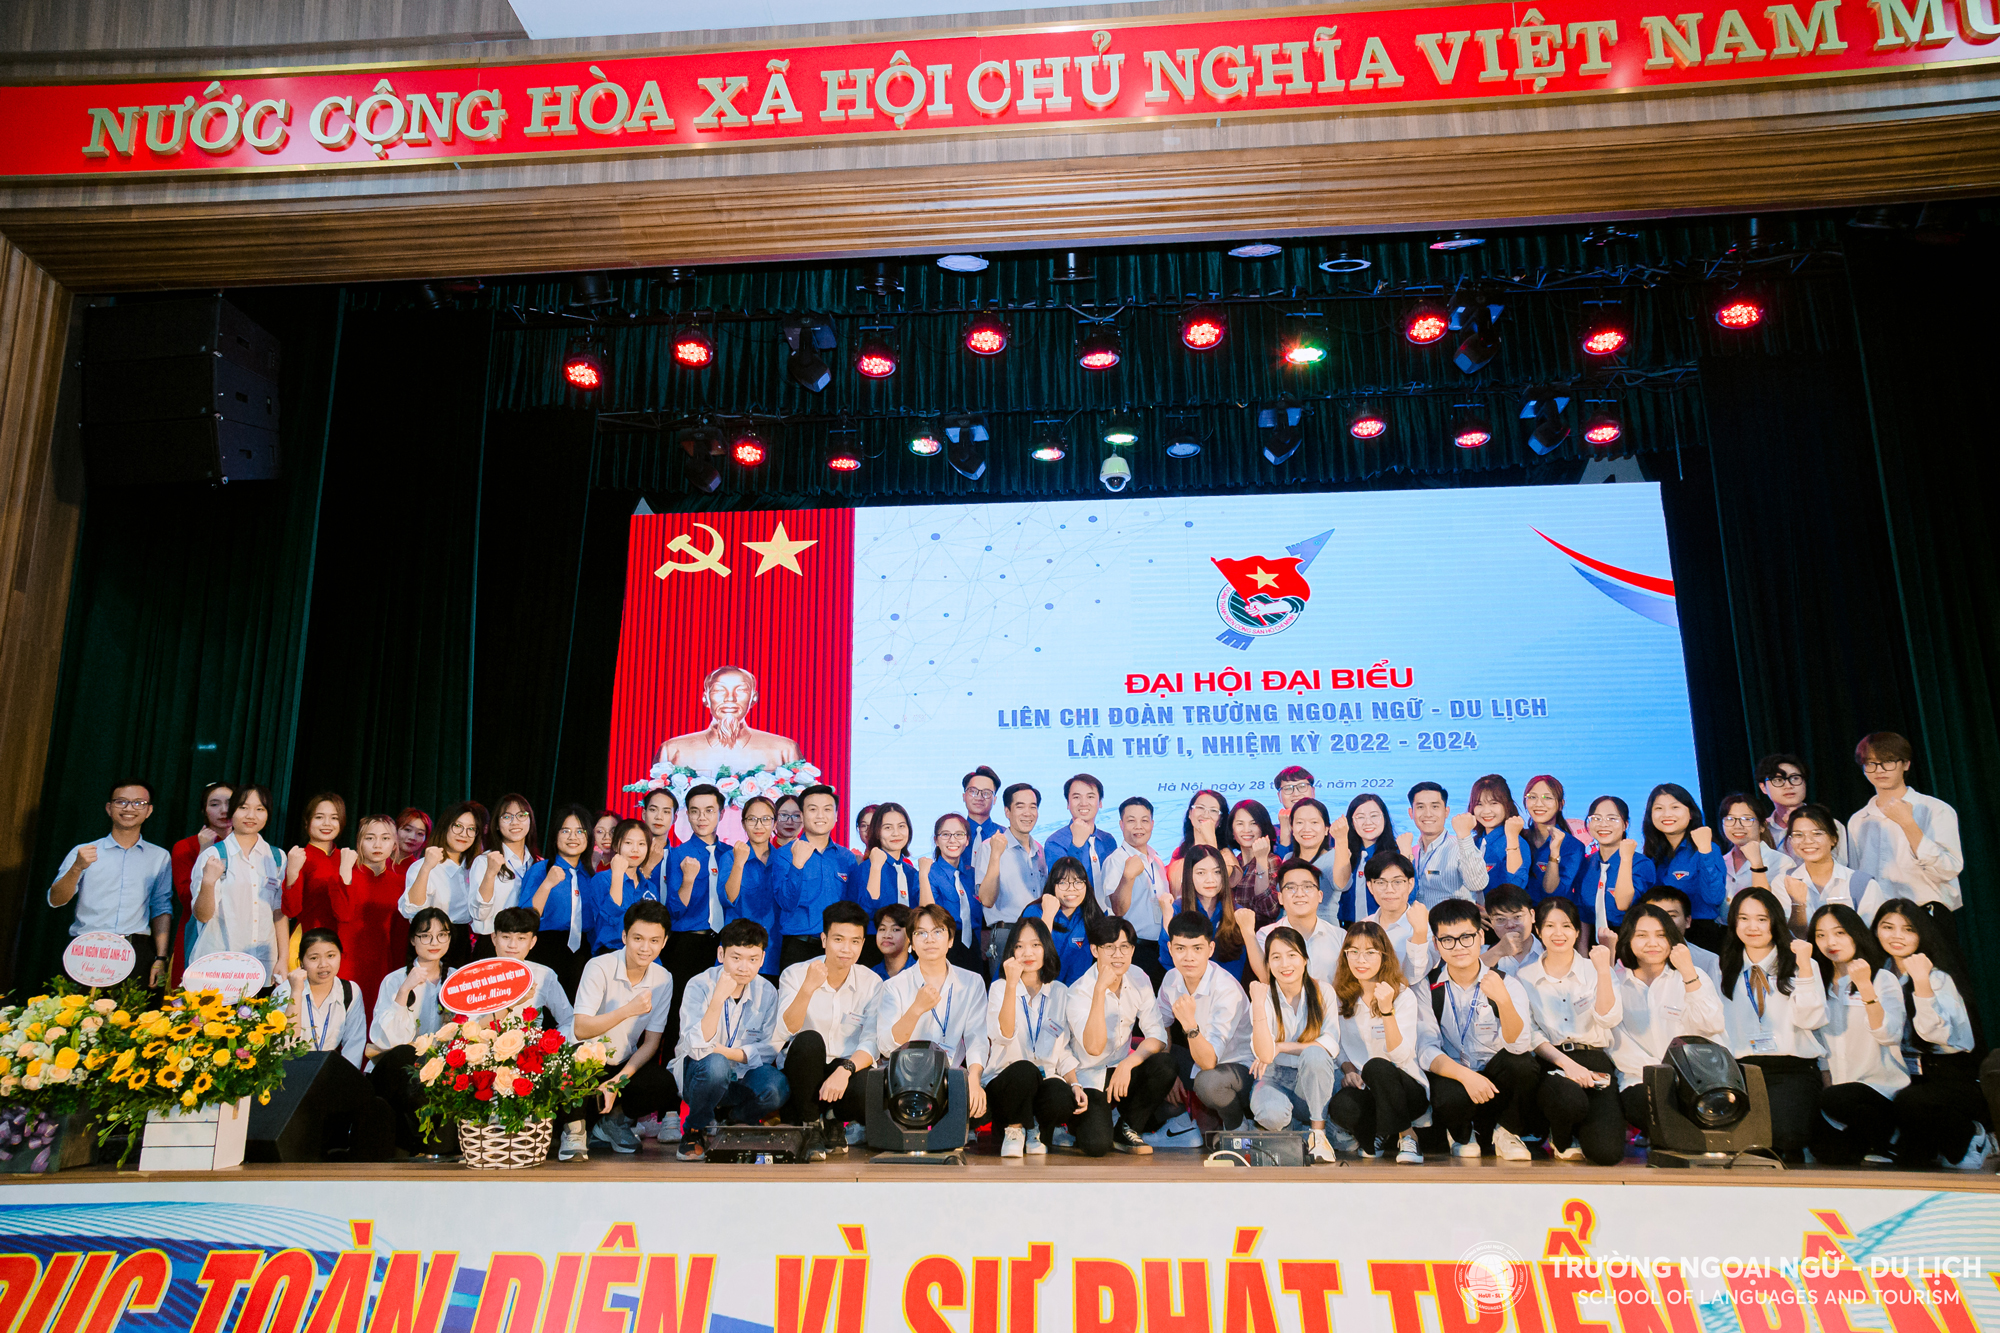 Đại hội đại biểu Liên chi Đoàn Trường Ngoại ngữ - Du lịch lần thứ I, nhiệm kỳ 2022 – 2024